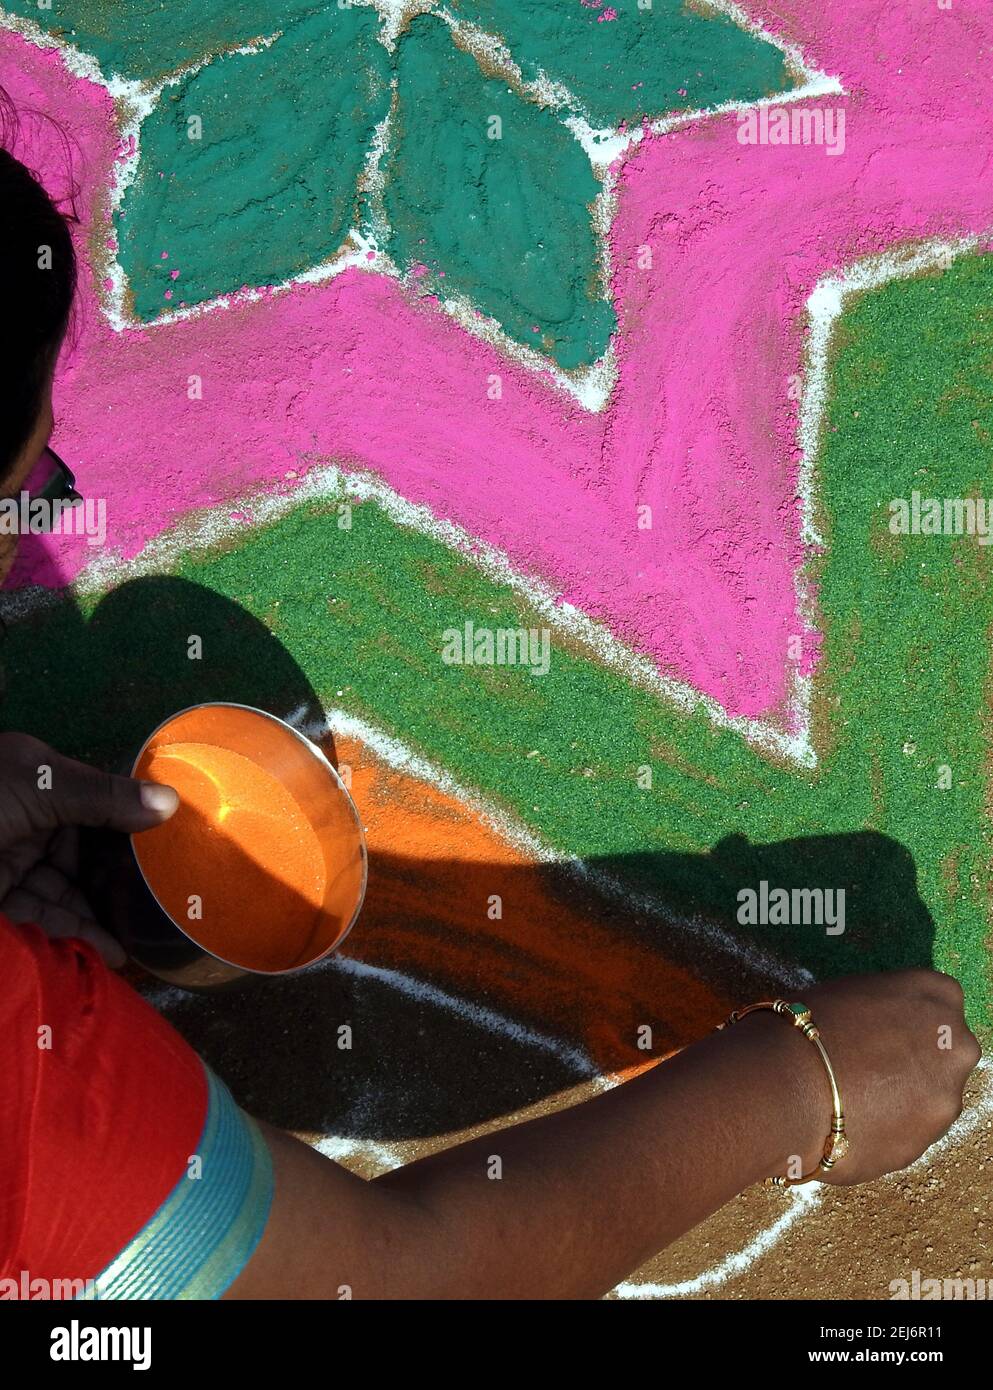 Donna indiana disegnando rangoli di fronte a casa o tempio durante il festival di raccolta, pongal o makar sankranti Foto Stock